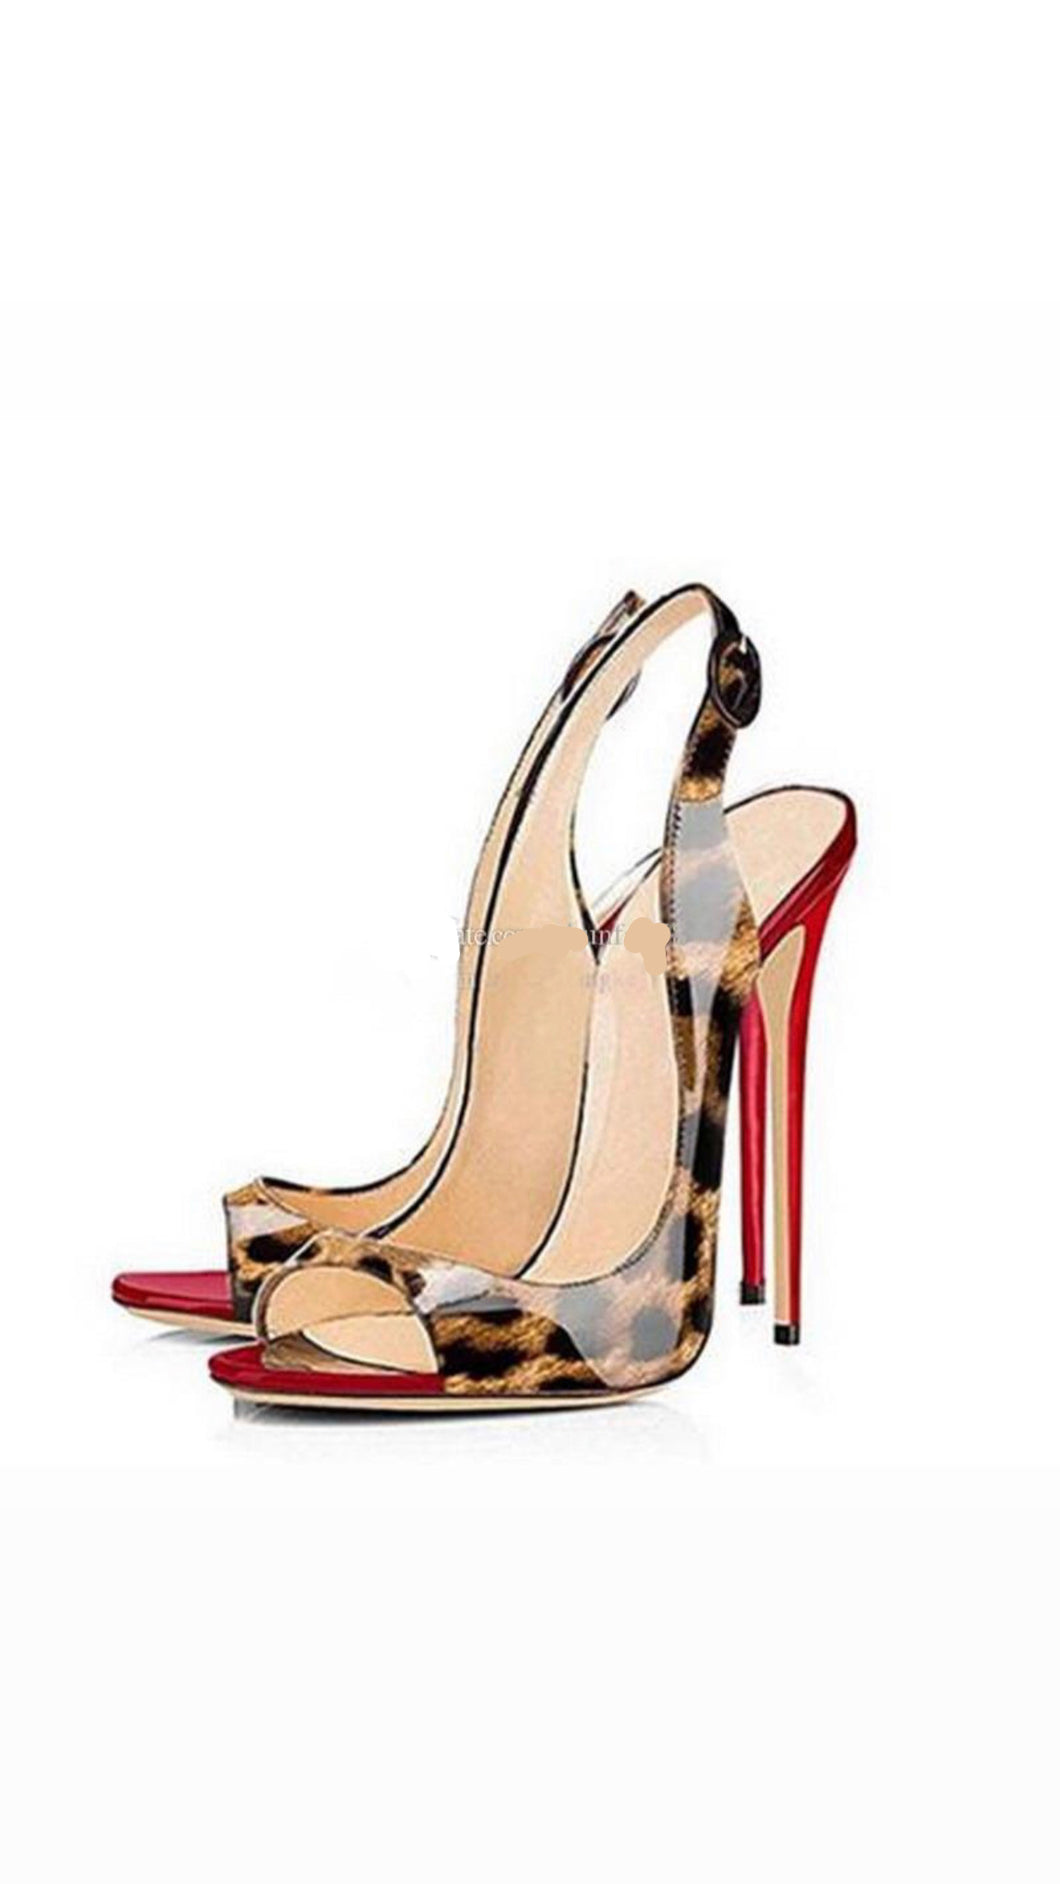 Cheetah heels